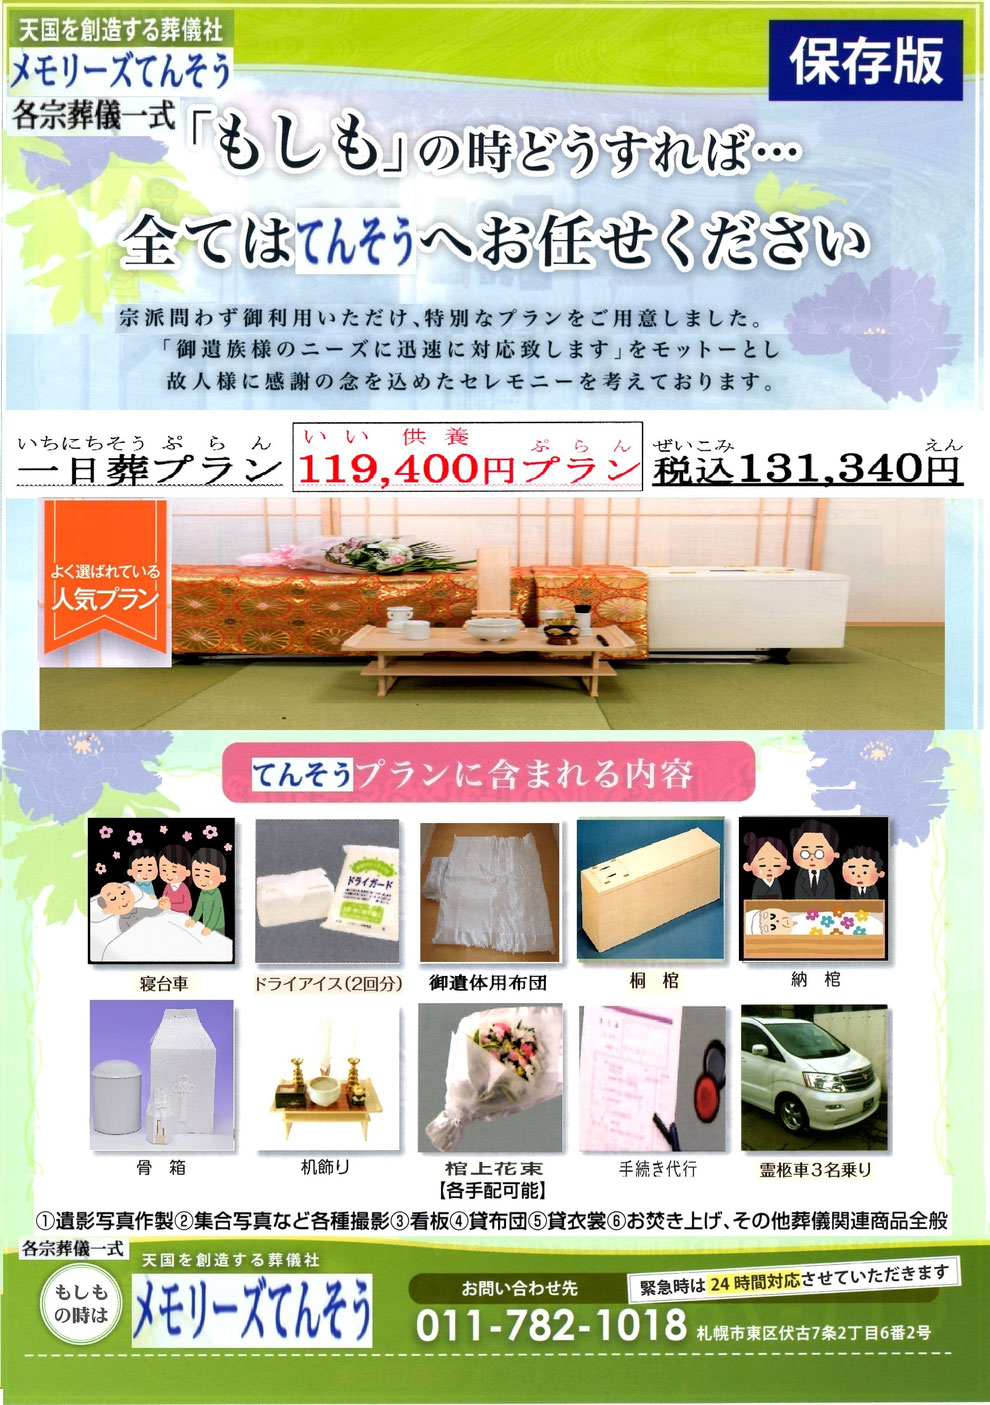 札幌家族葬メモリーズてんそう 葬儀・家族葬131,340円プラン